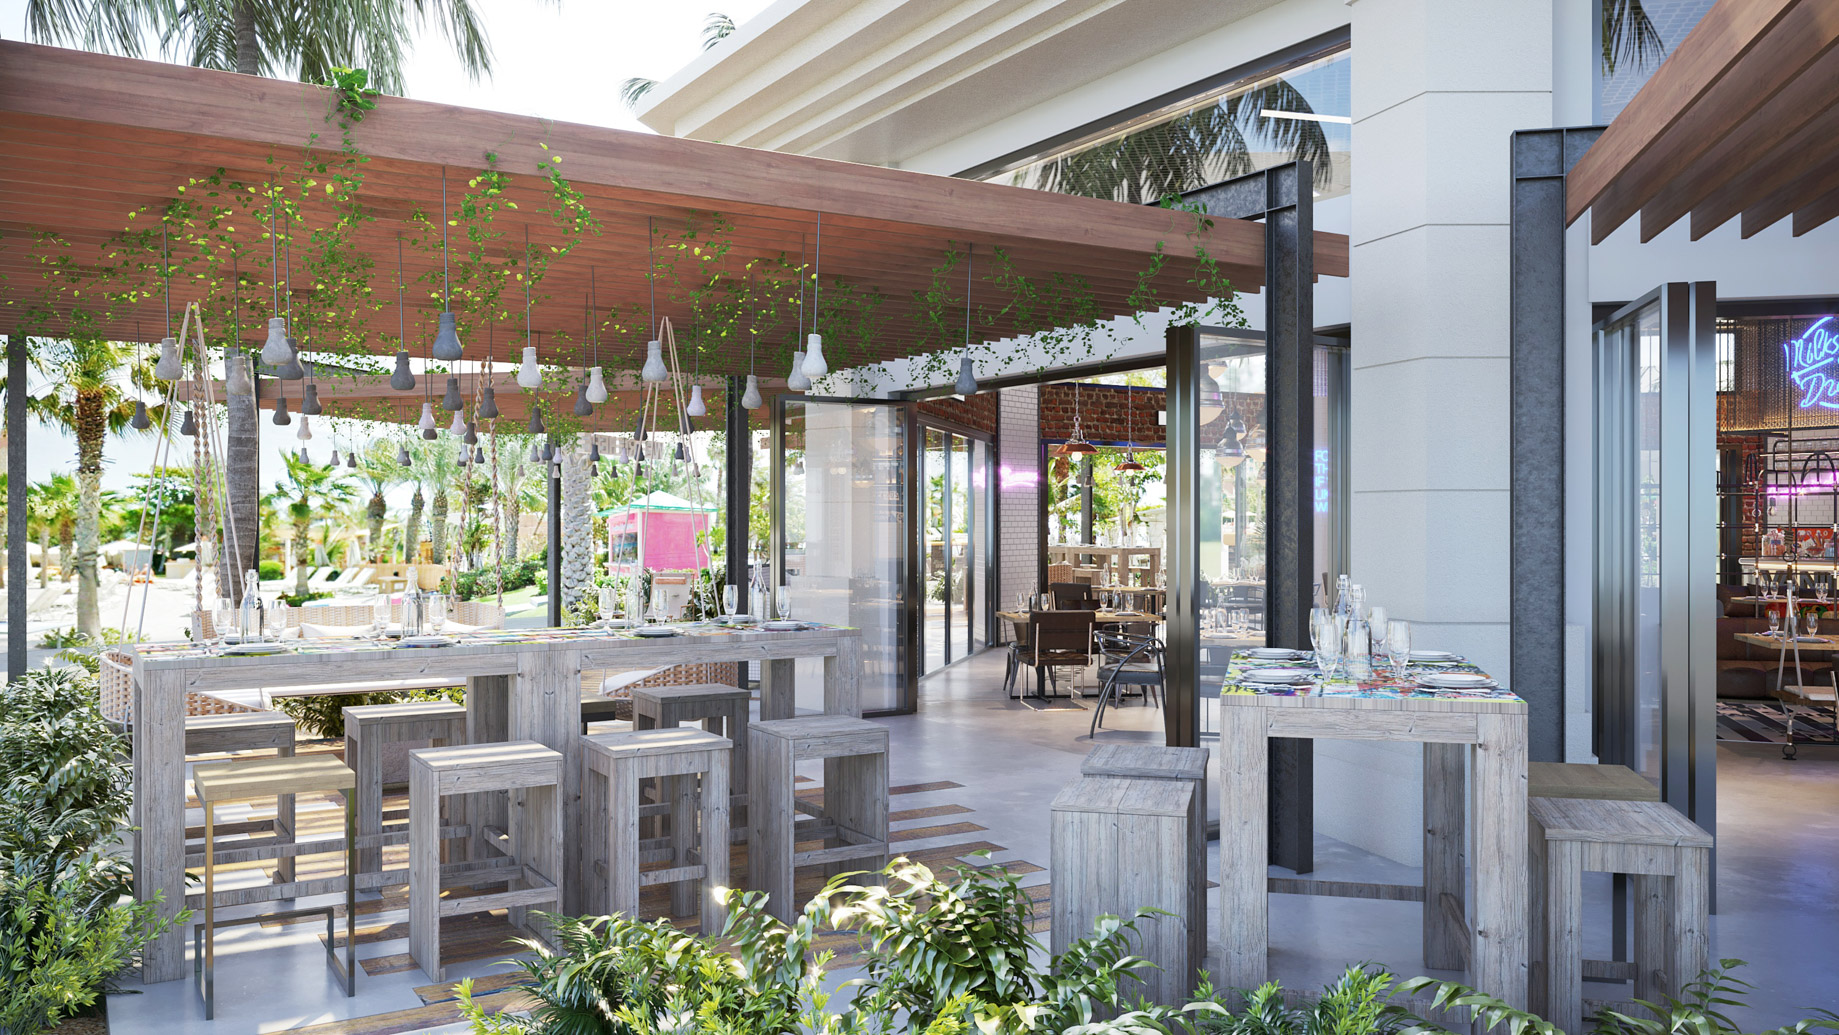 Atlantis The Palm Resort – Crescent Rd, Dubai, UAE – Beach Buns Restaurant Patio